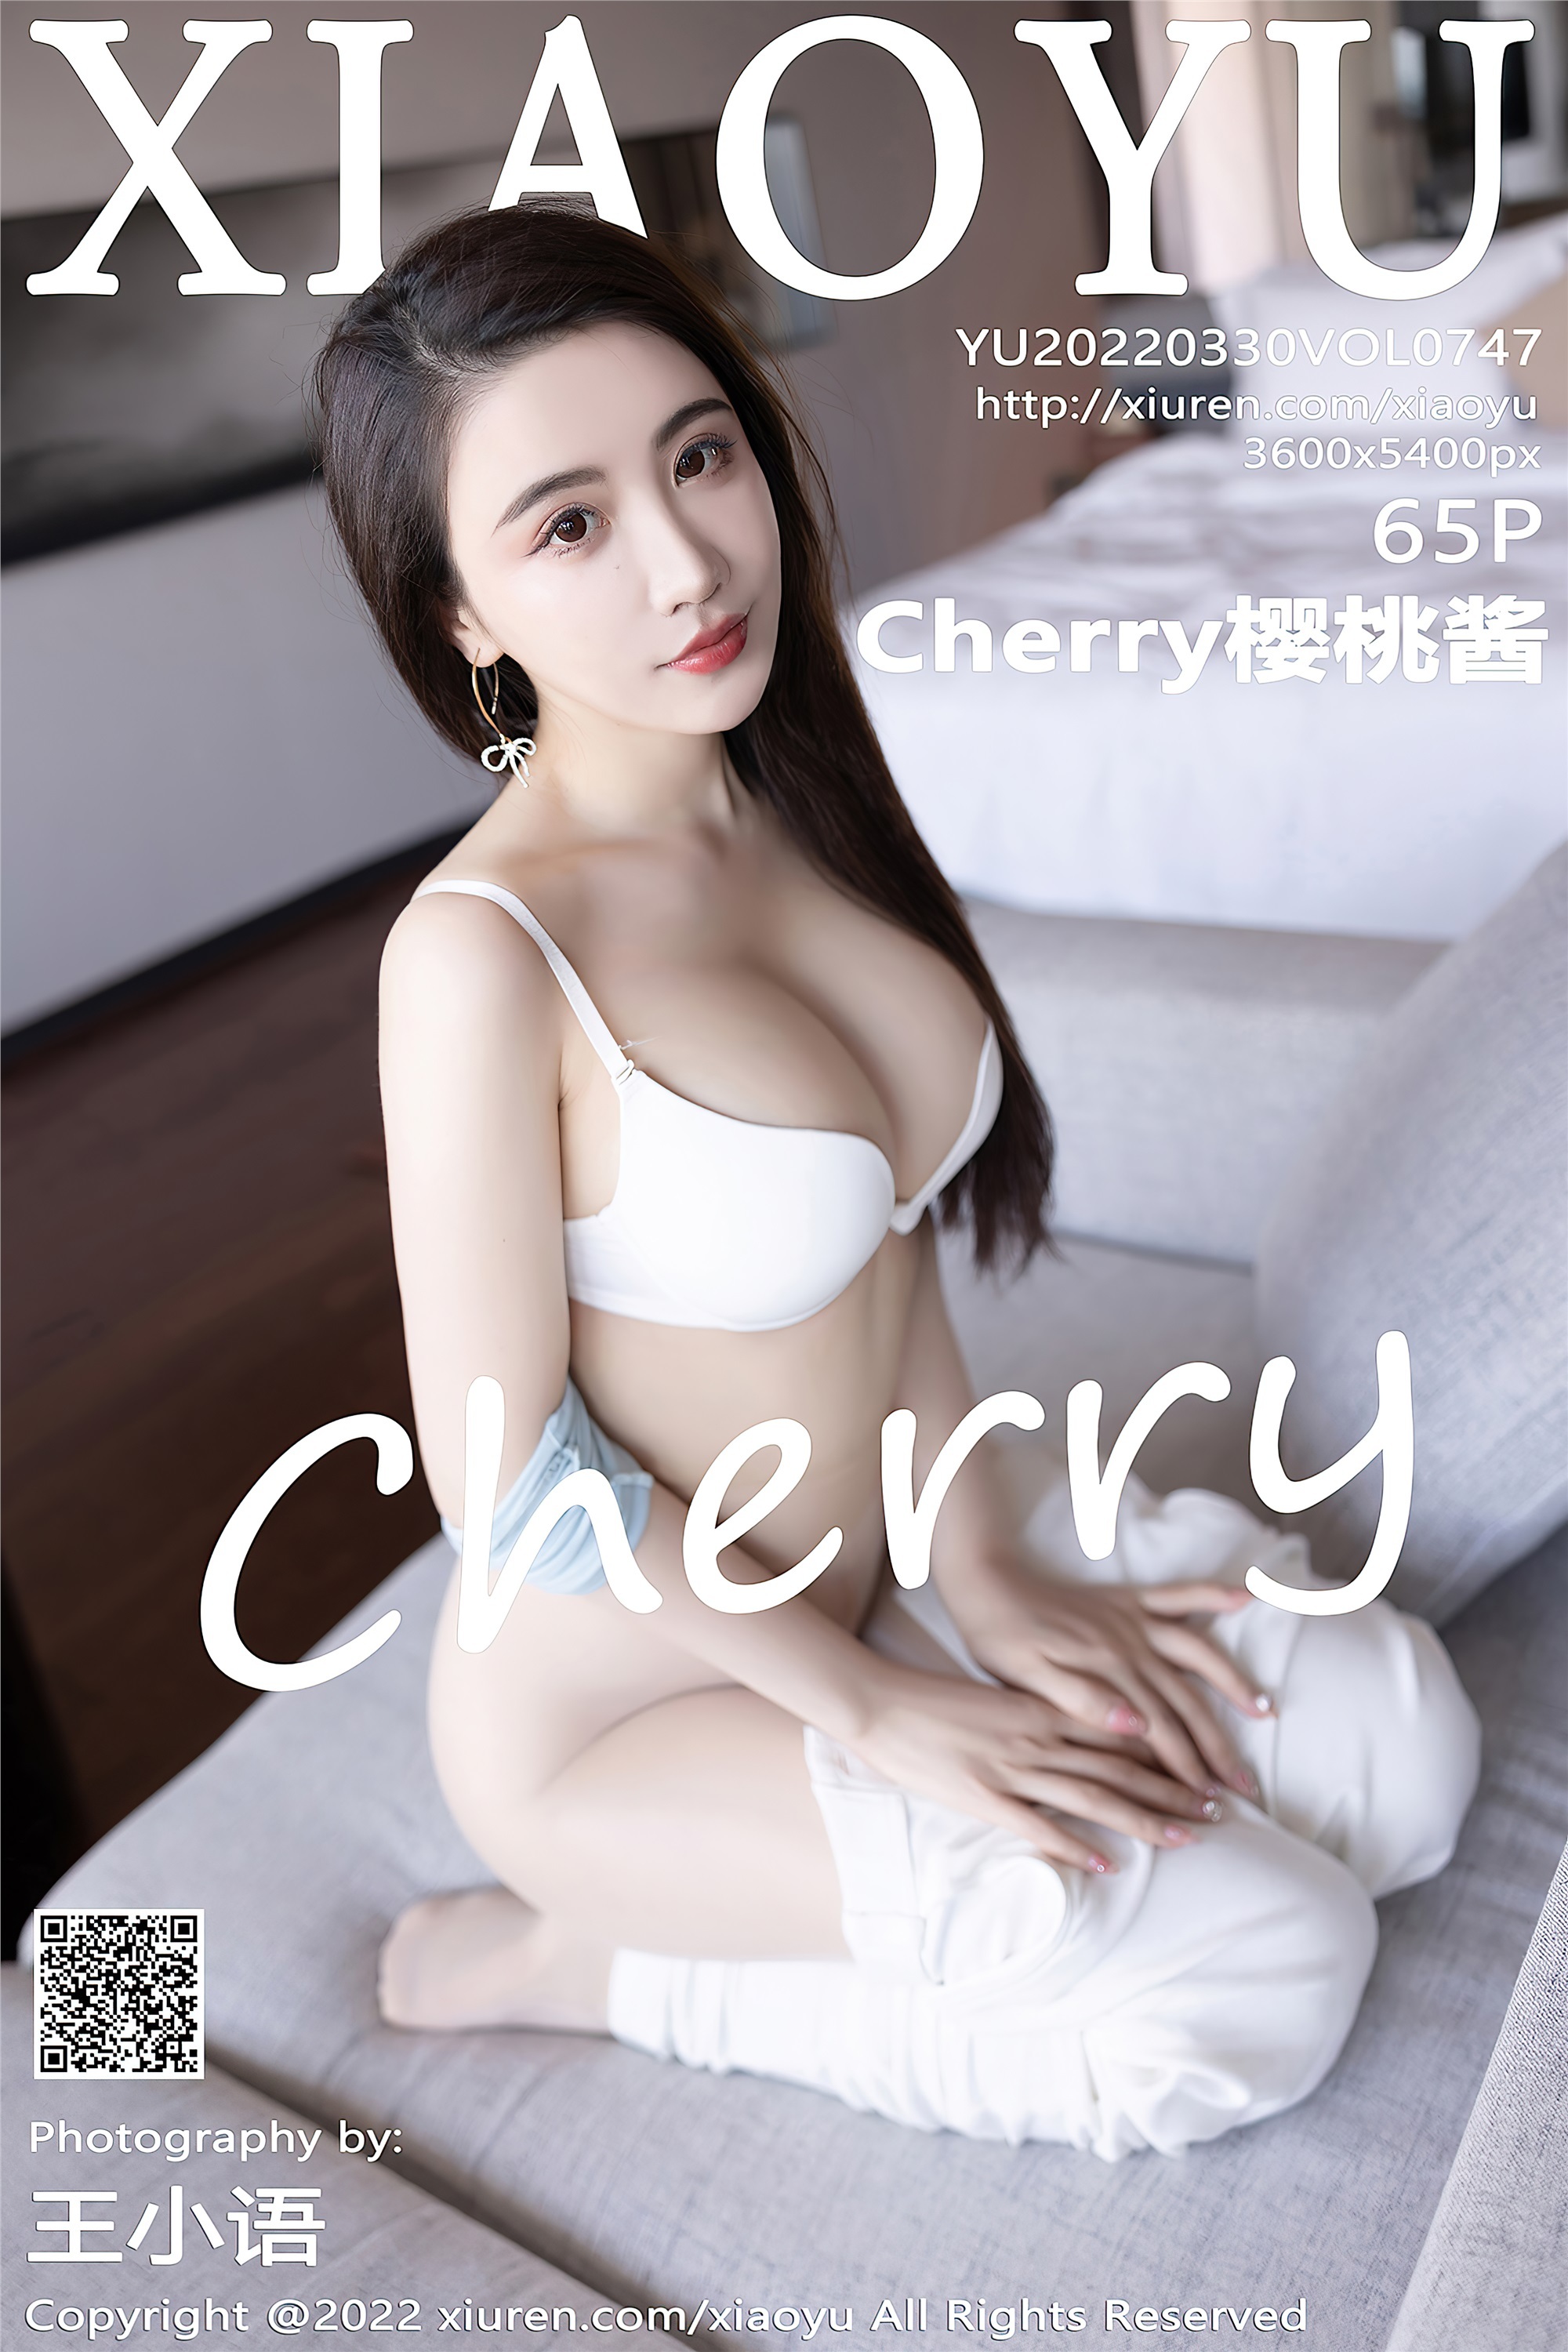 XIAOYU语画界 2022.03.30 Vol.747 Cherry樱桃酱 惠州旅拍